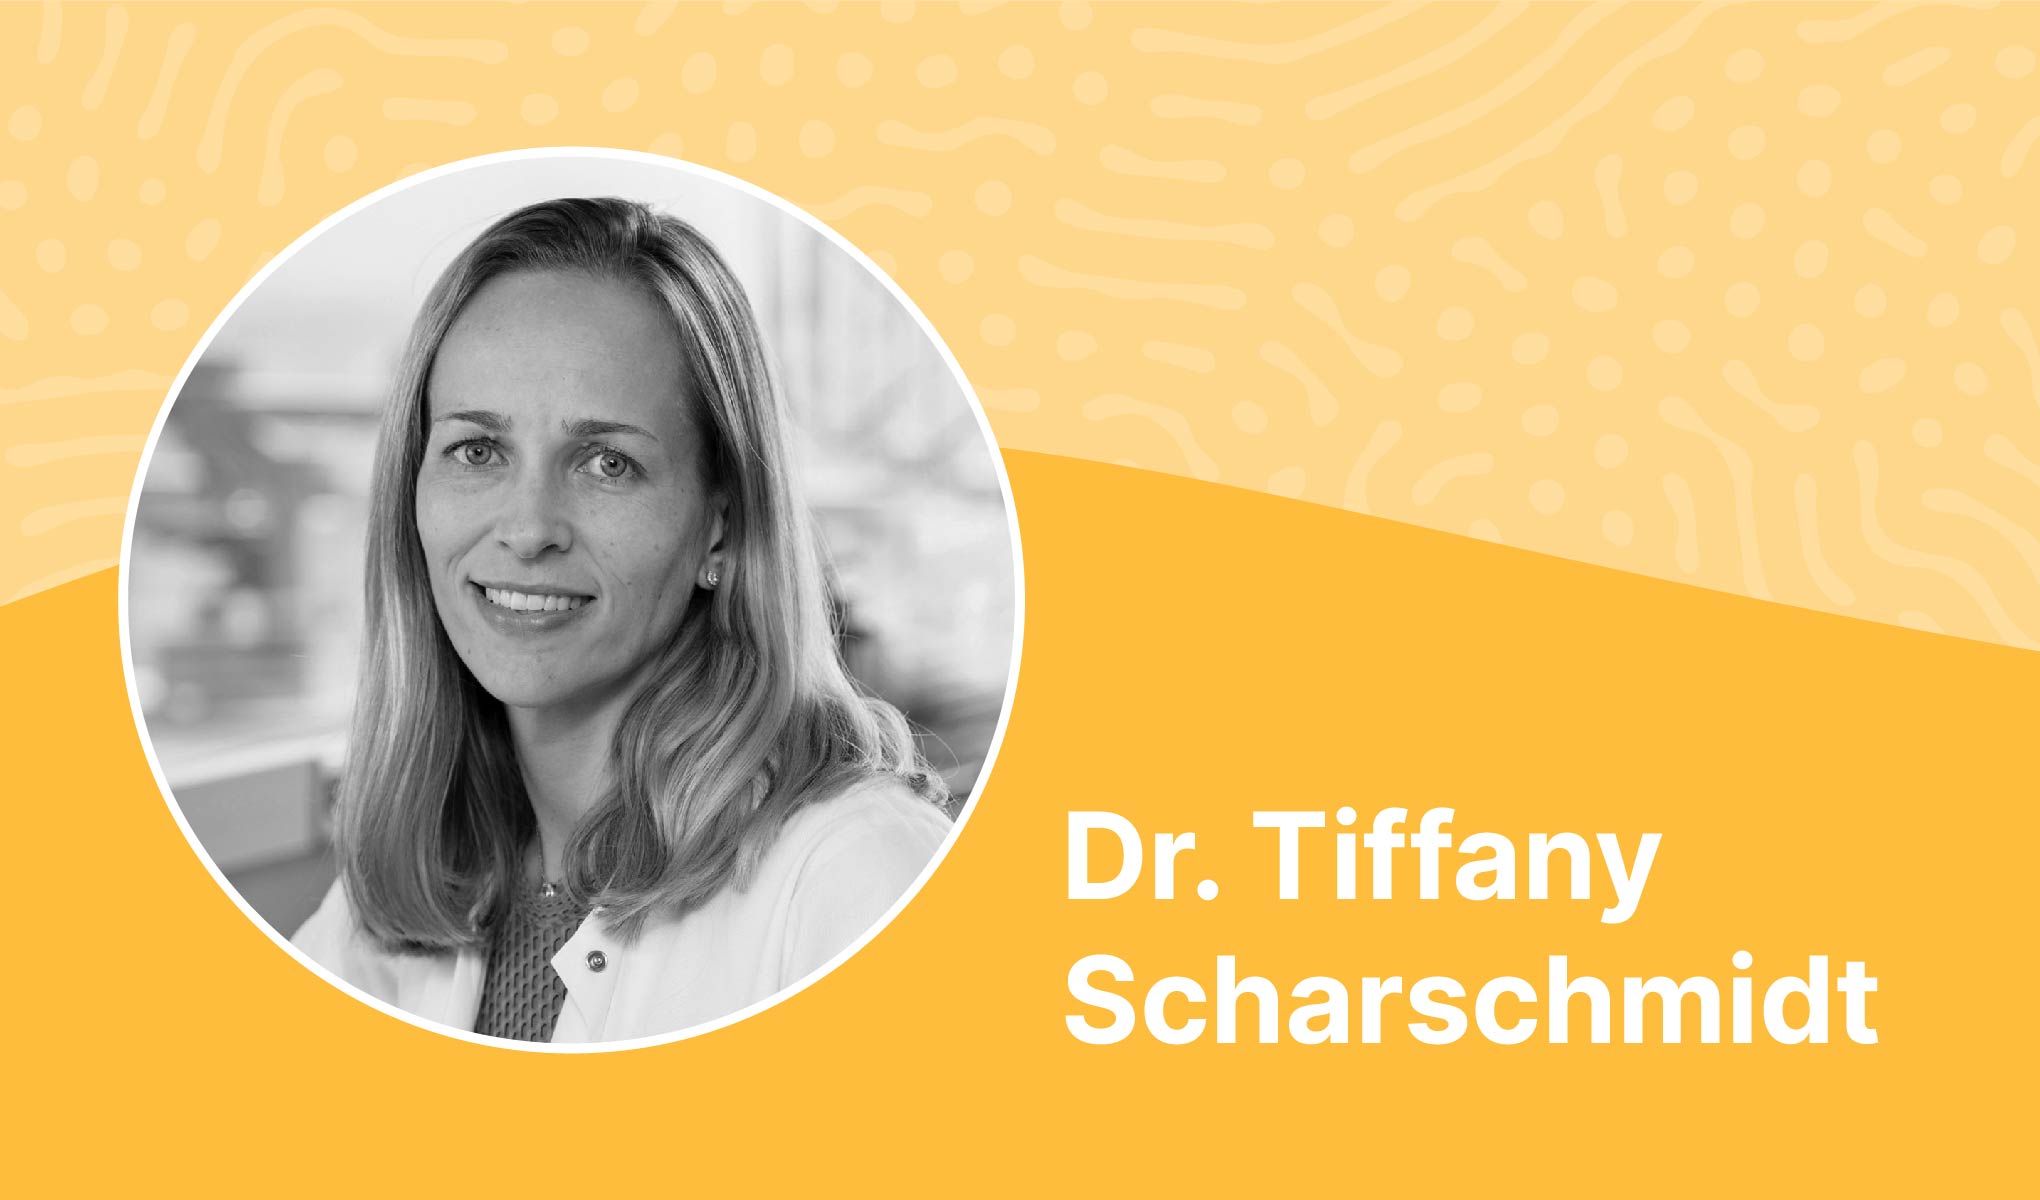 Dr. Tiffany Scharschmidt